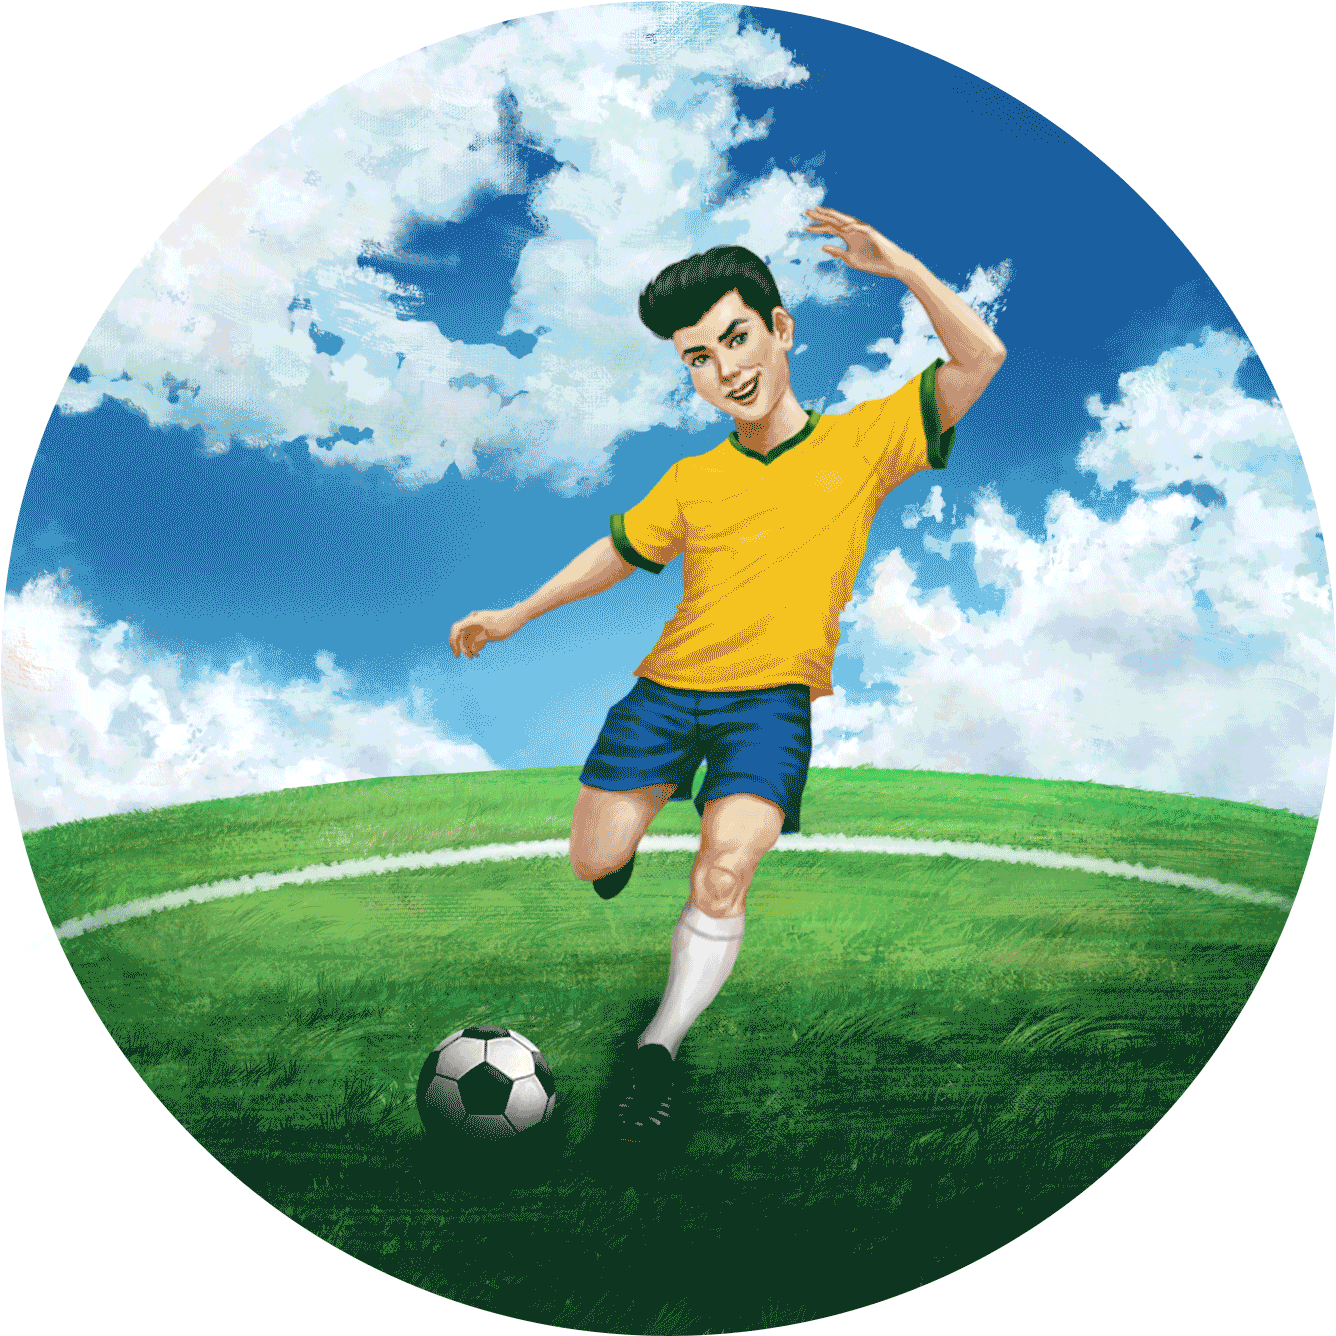 Card - Caio chuta a bola - Educação Infantil - Samia Marsili - Ilustrado por André Martins